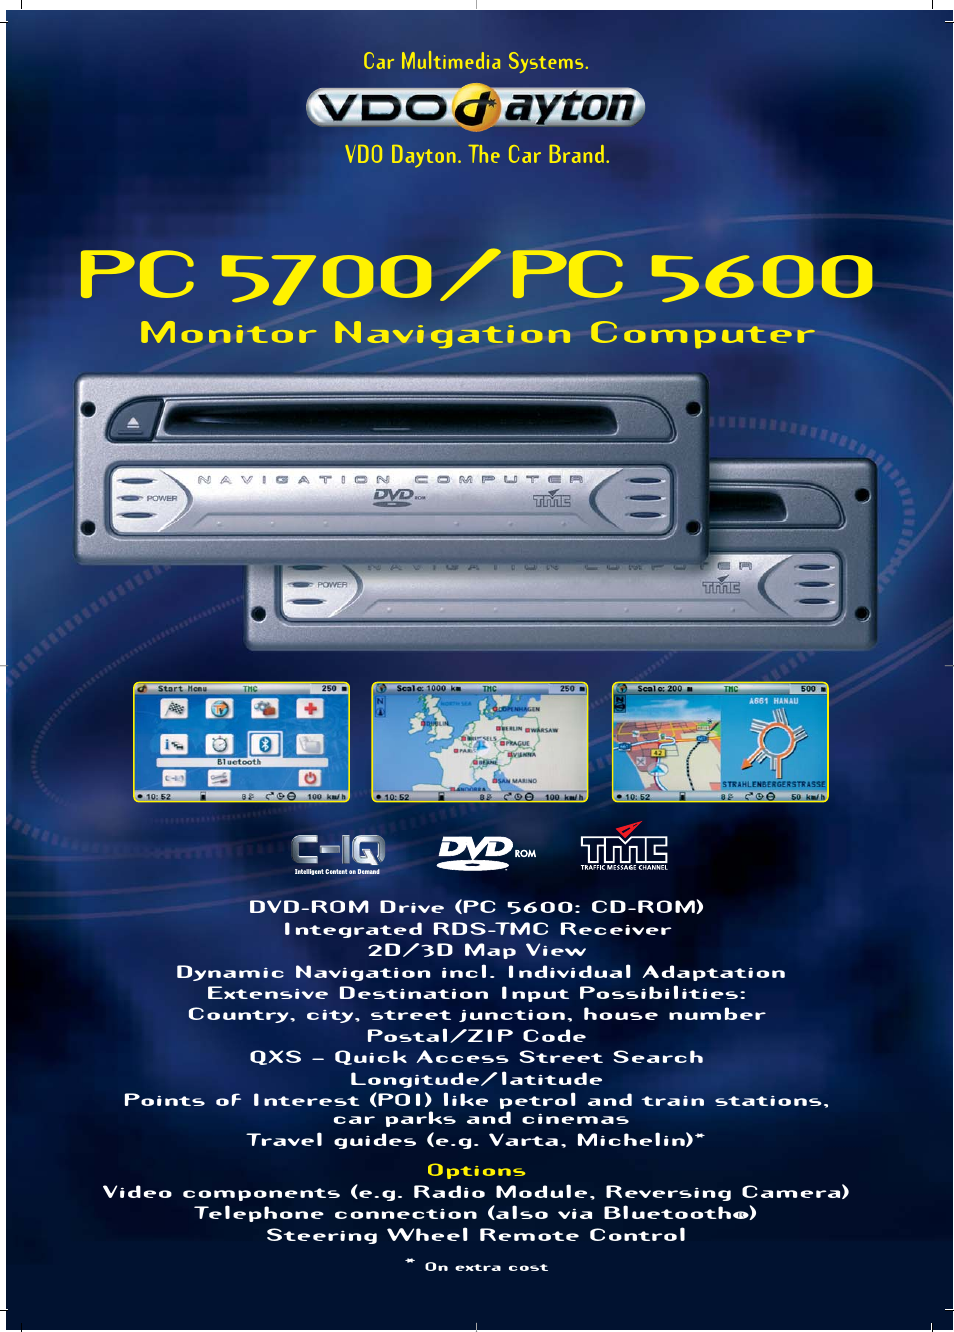 Monitor Navigation Computer PC 5600